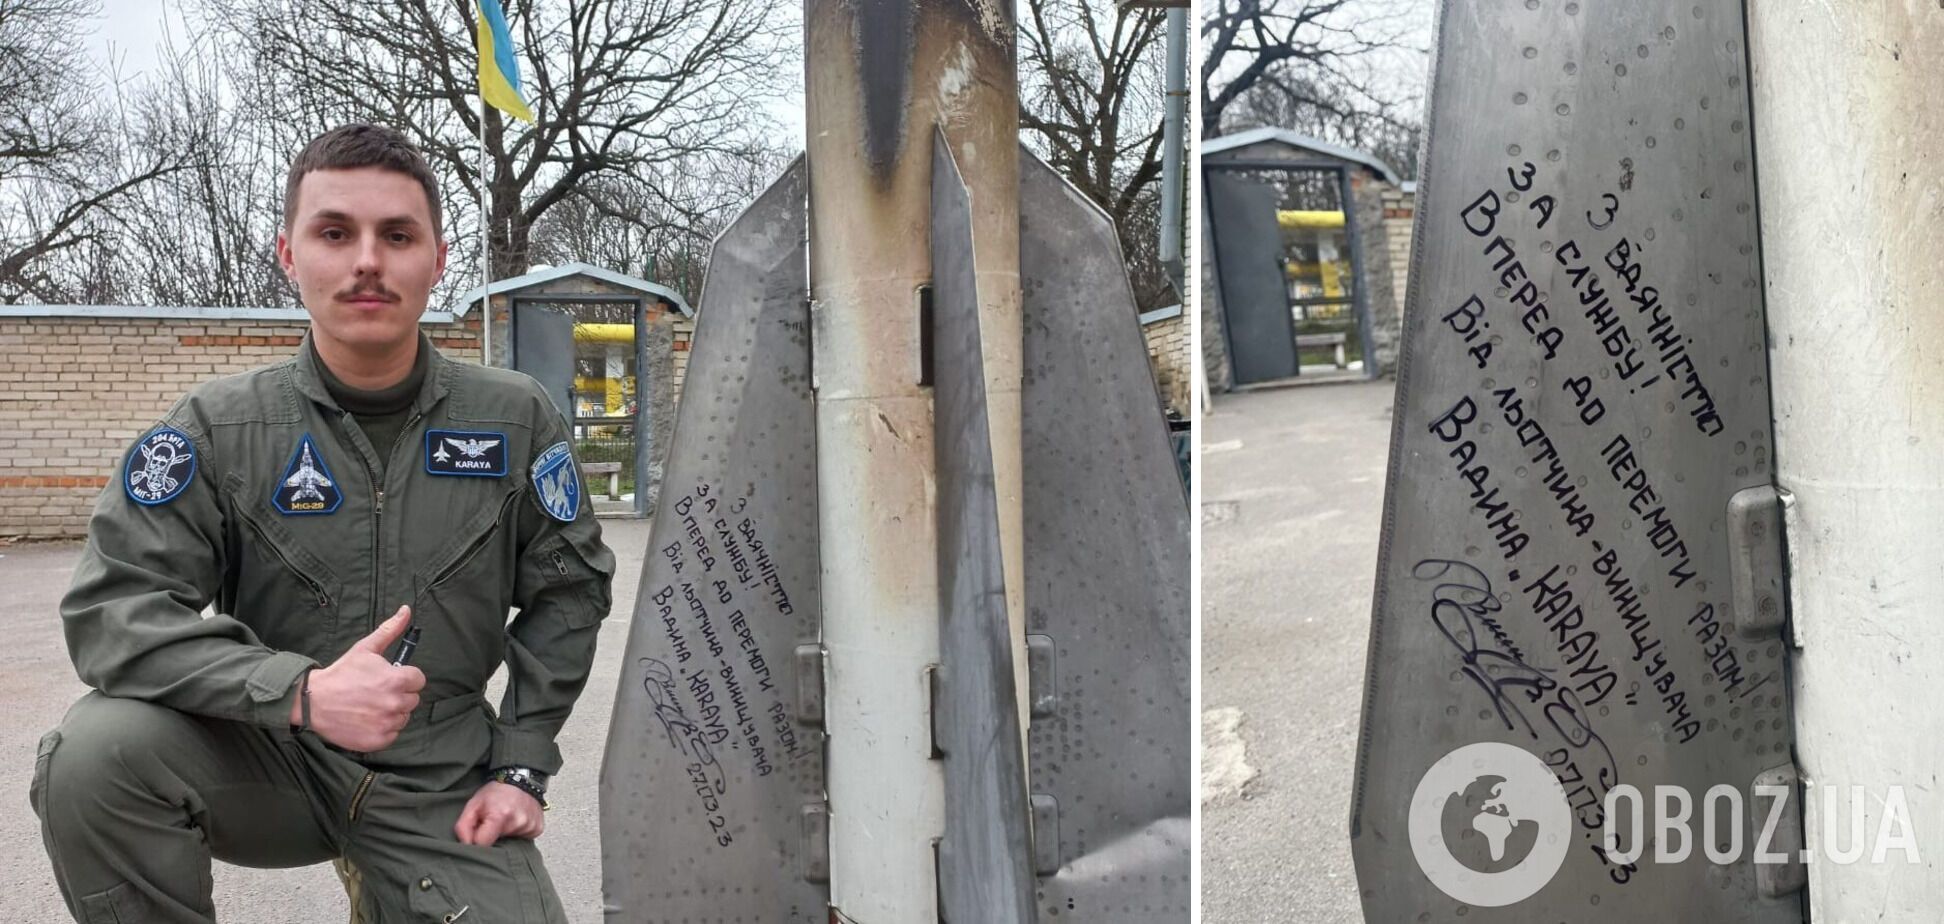 Вадим Ворошилов 'Карая' лишив автограф на своїй ракеті